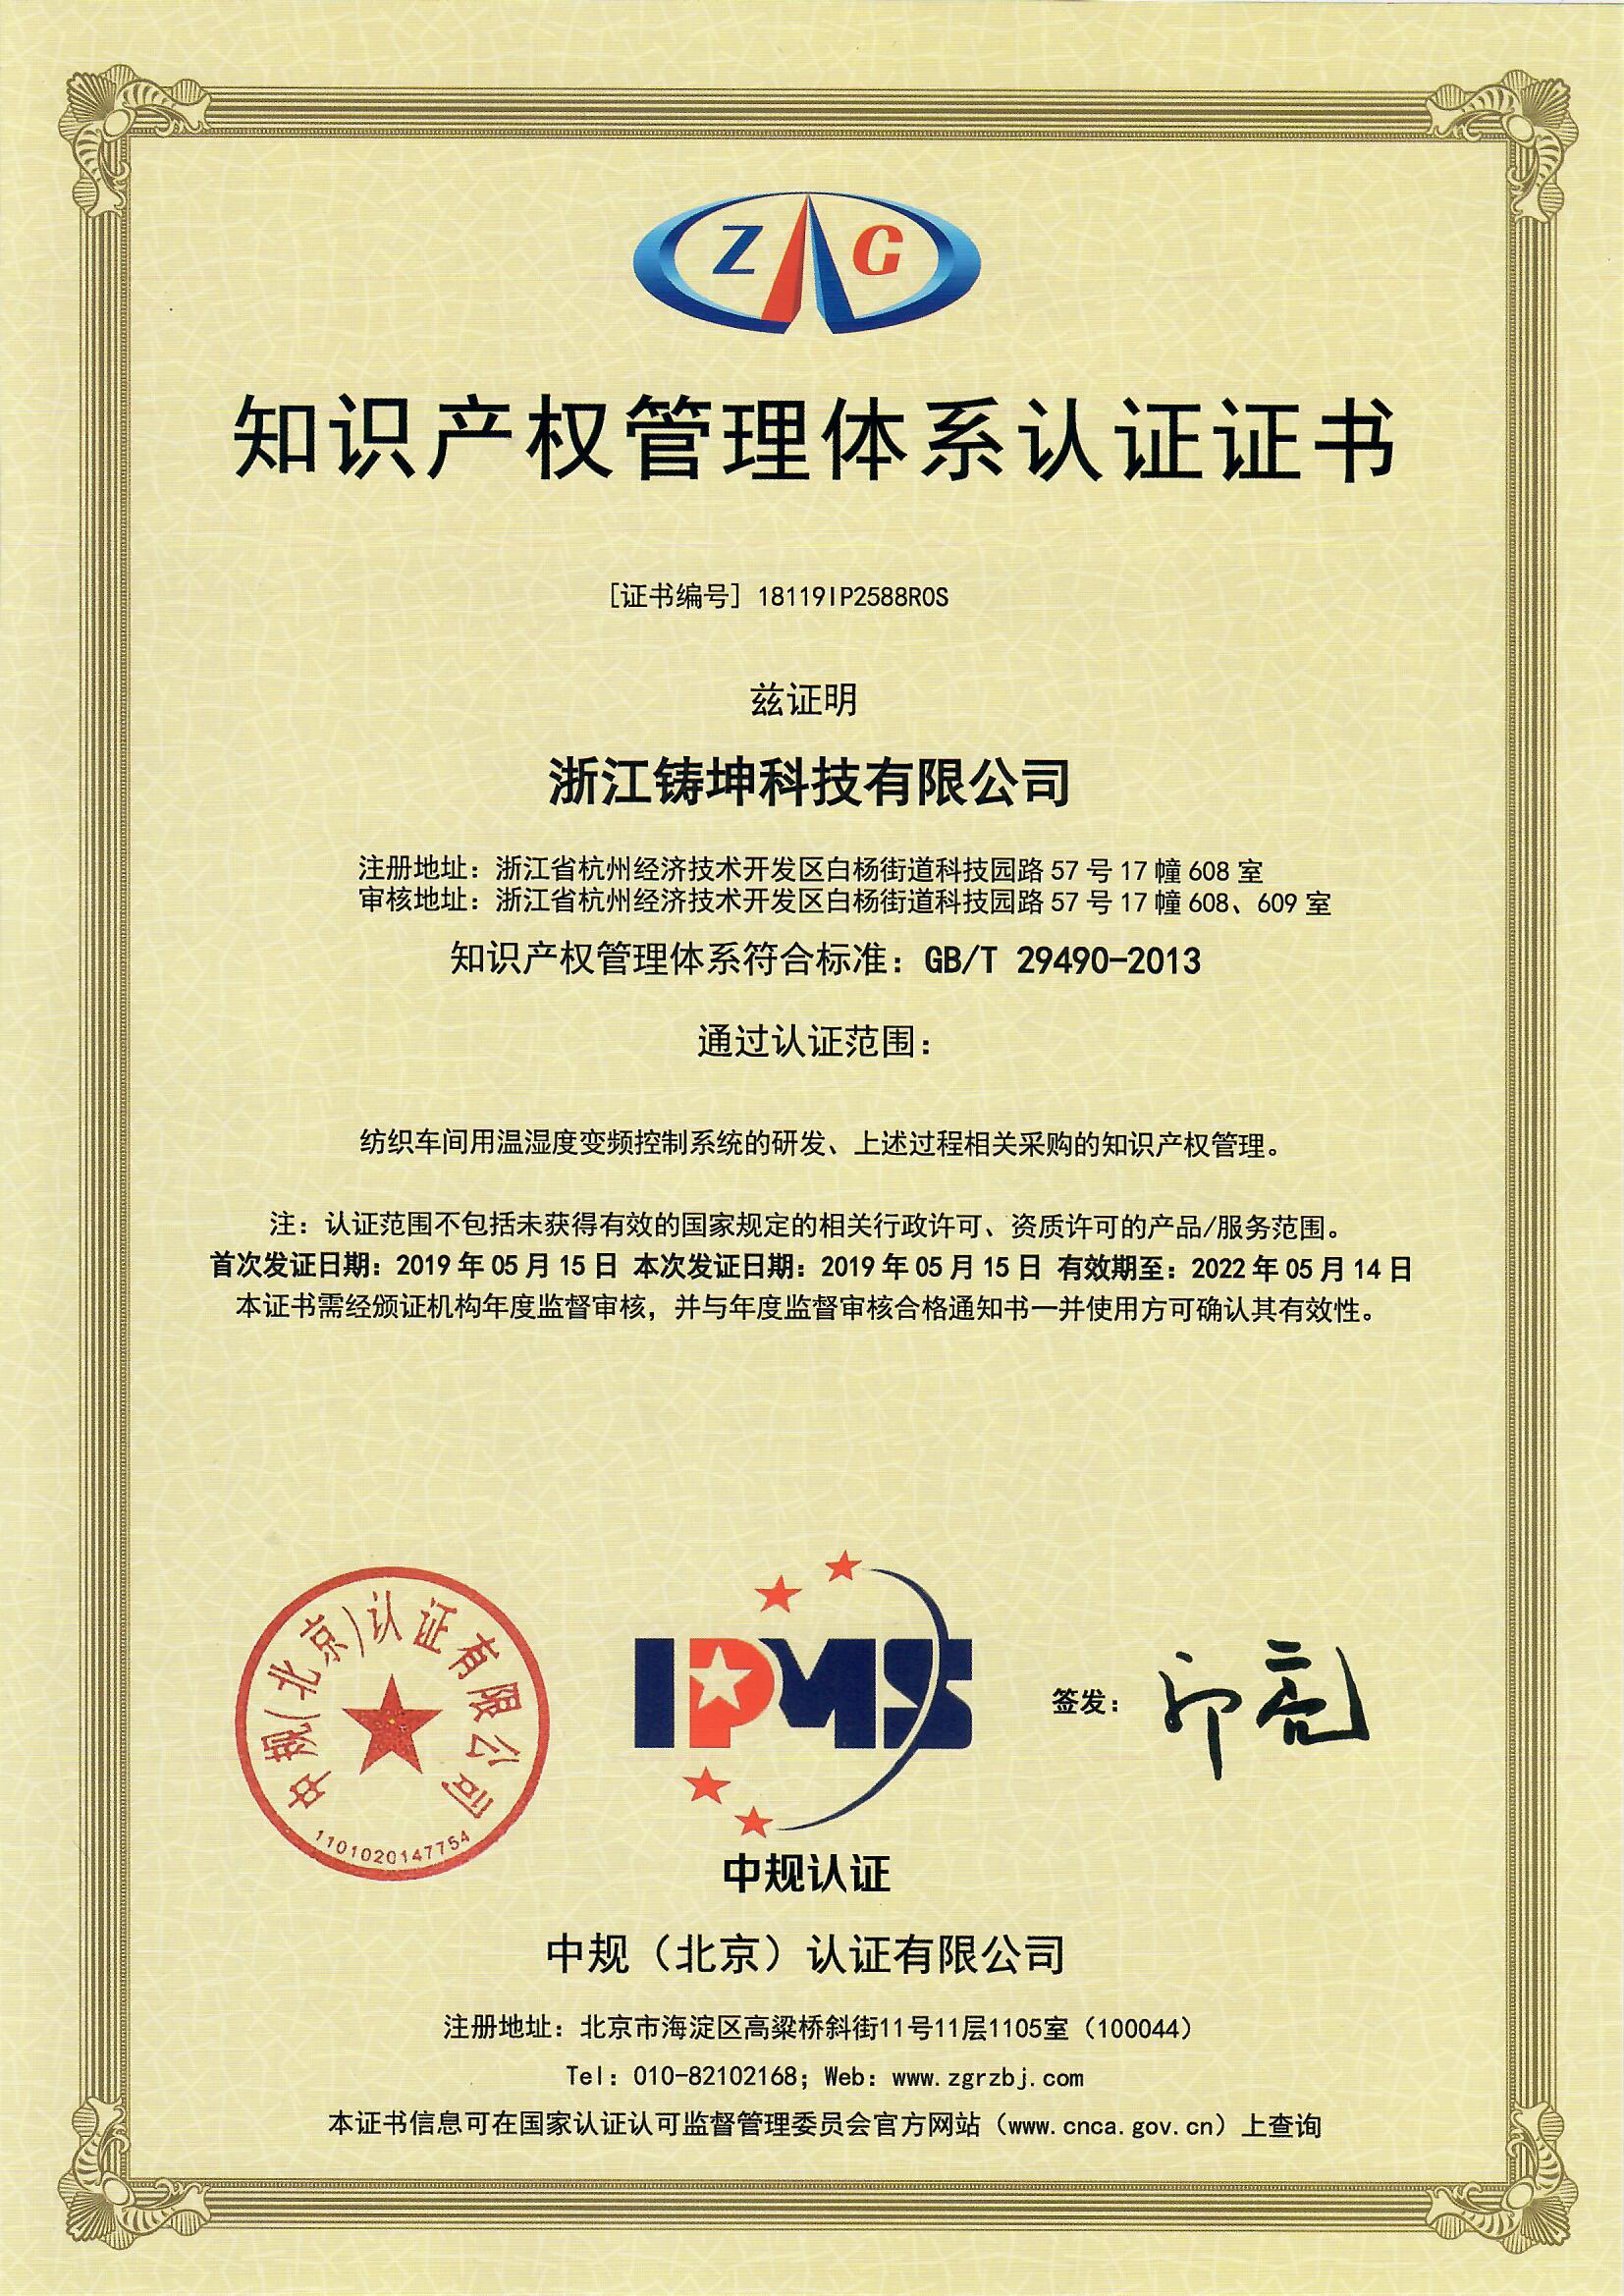 热烈祝贺我公司顺利通过《企业知识产权管理规范》体系认证